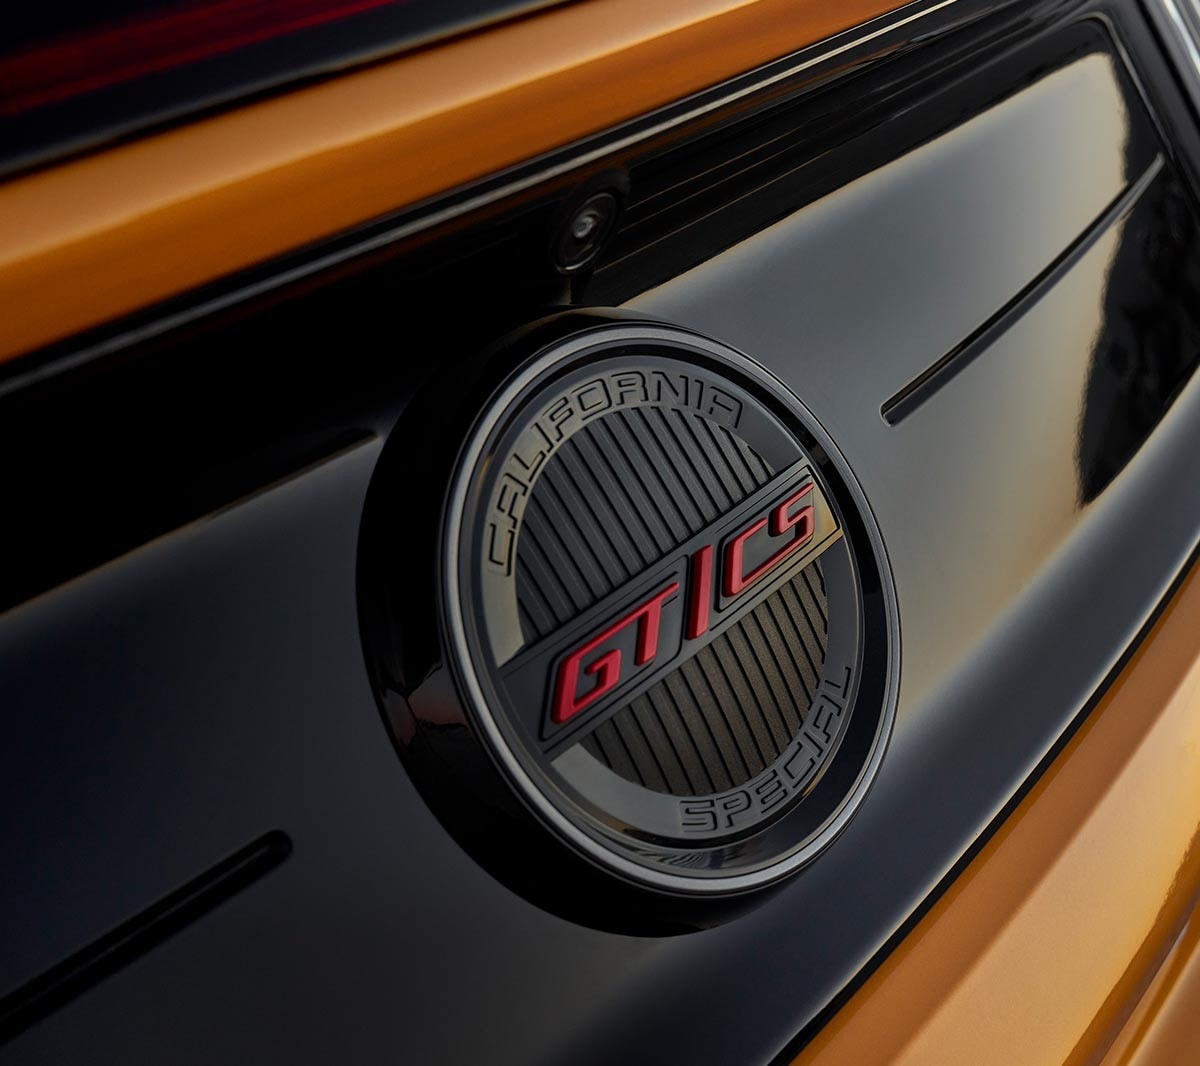 Ford Mustang California couleur orange. Vue détaillée de l’emblème GT.